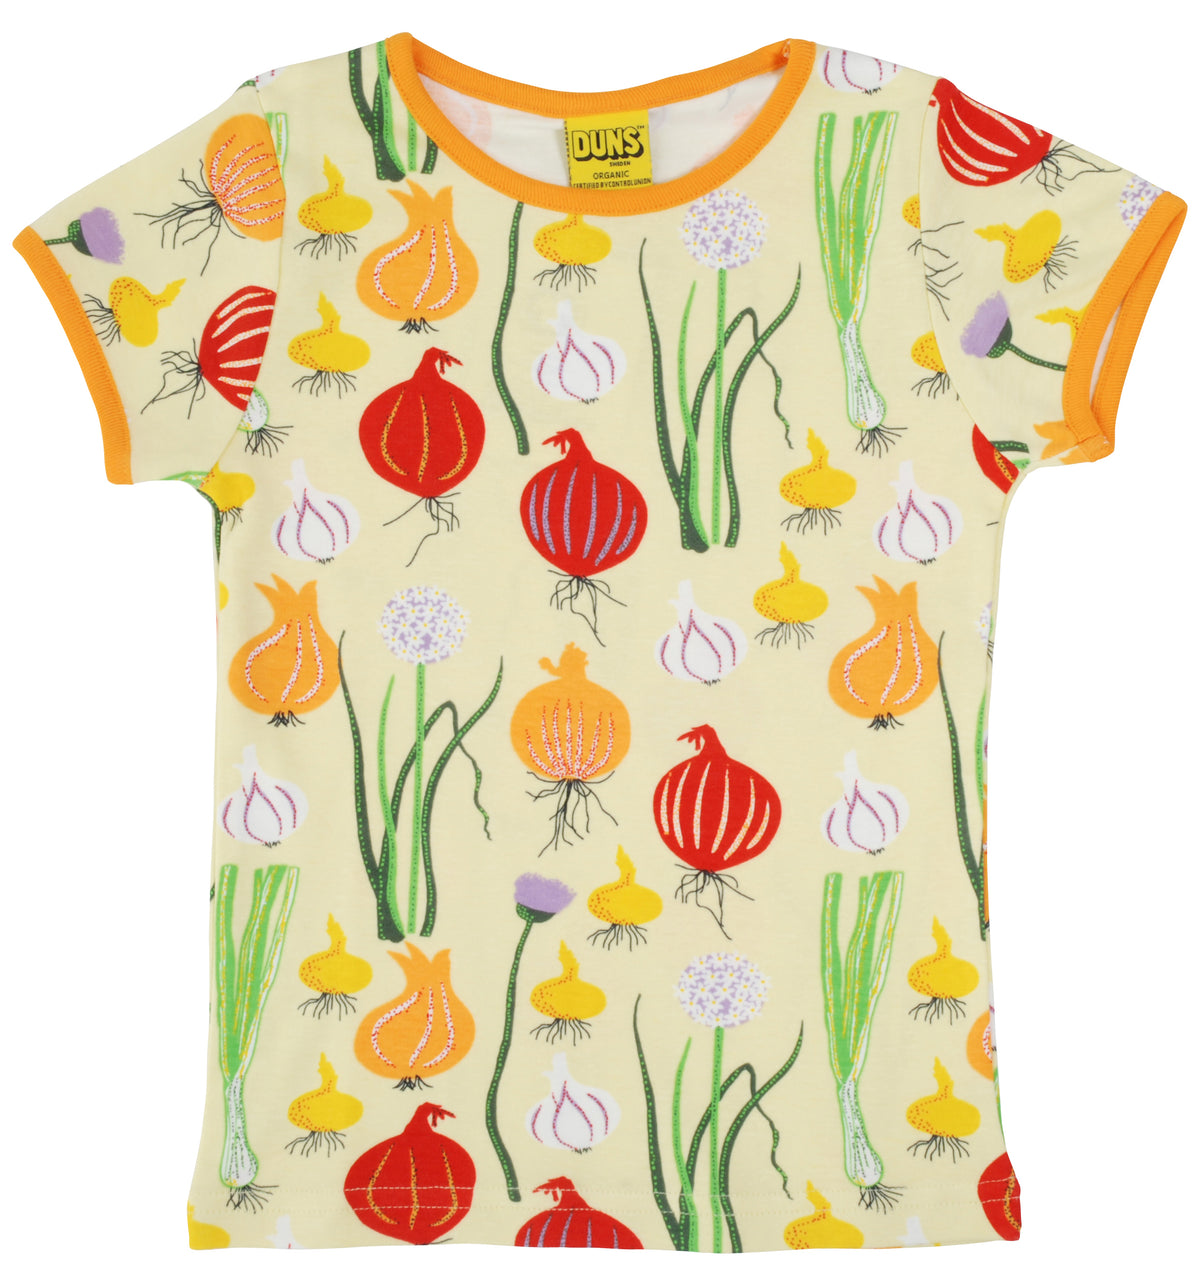 Duns Sweden - T-shirt Garlic, Chives and Onion Pale Green Shirt Knoflook, Bieslook &amp; Ui Zacht Groen